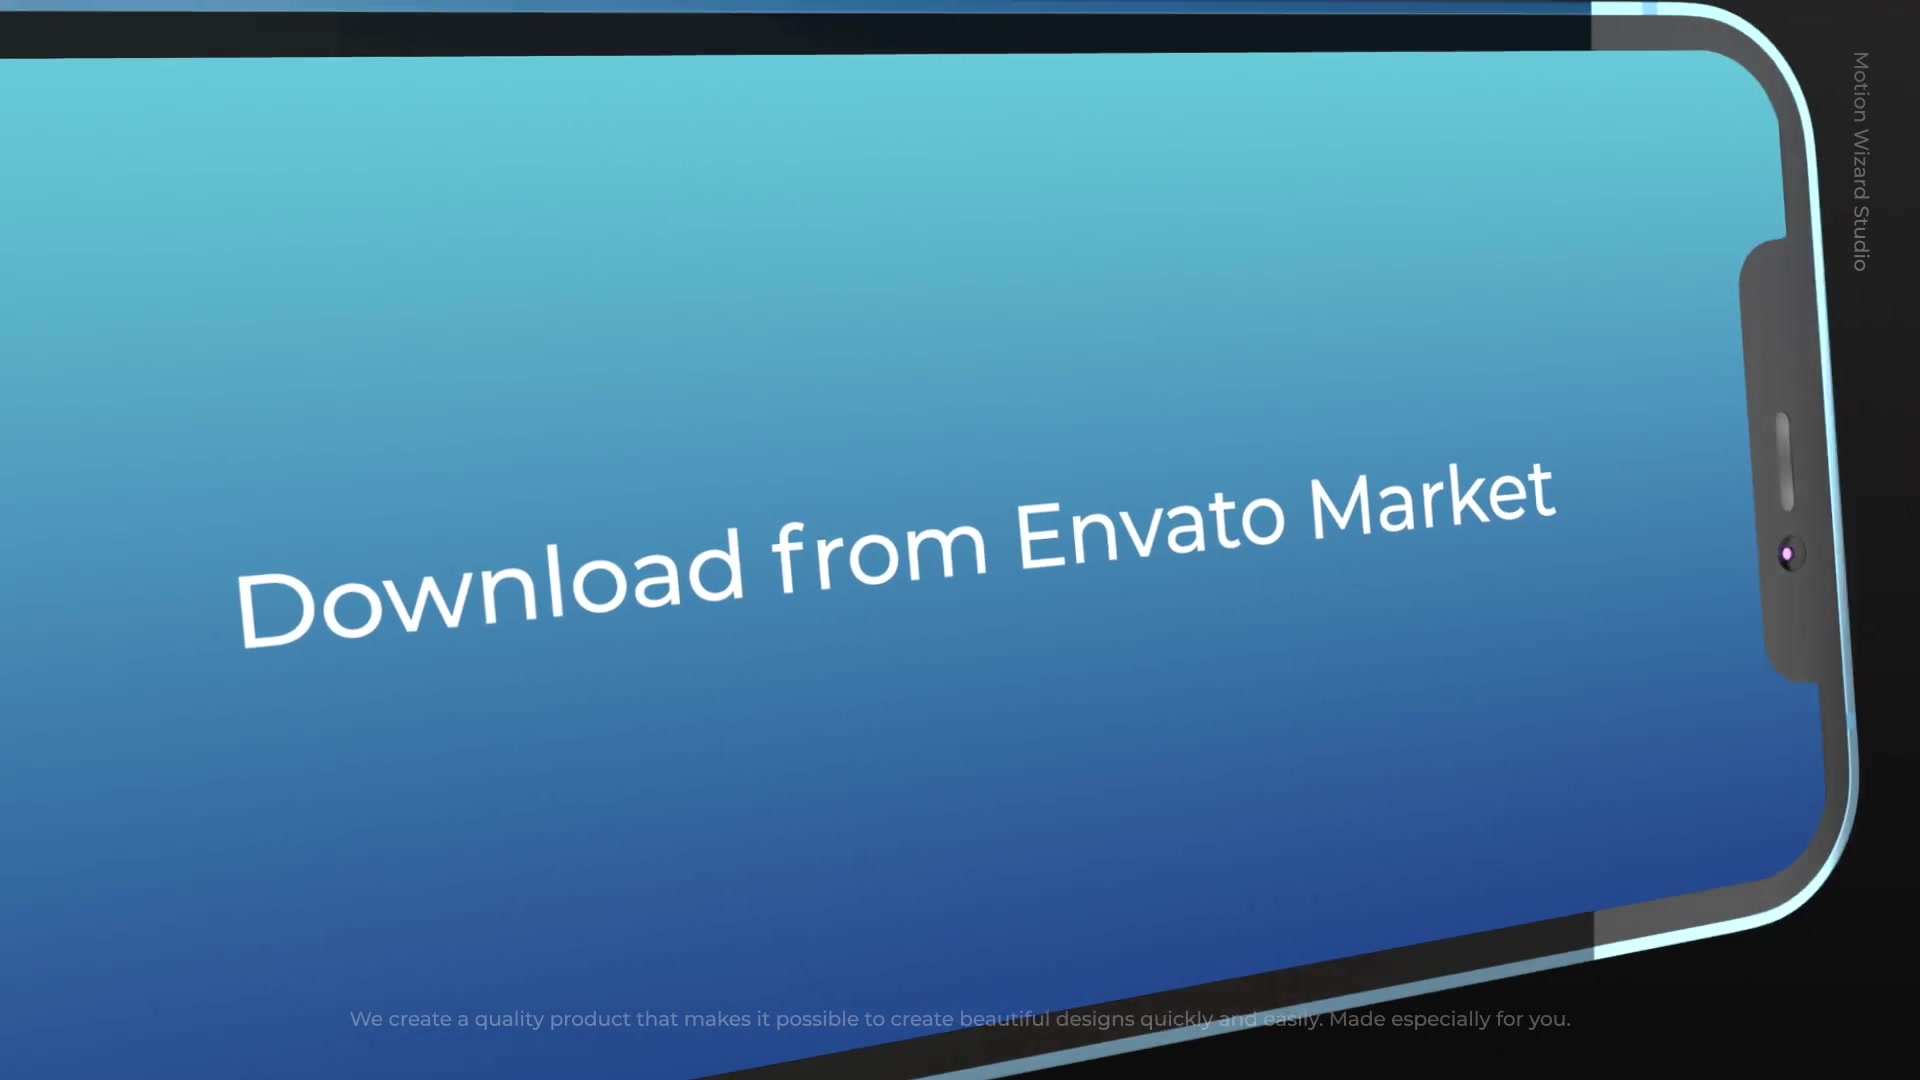 Easy App Promo For Premiere Videohive 39032862 Premiere Pro Image 7